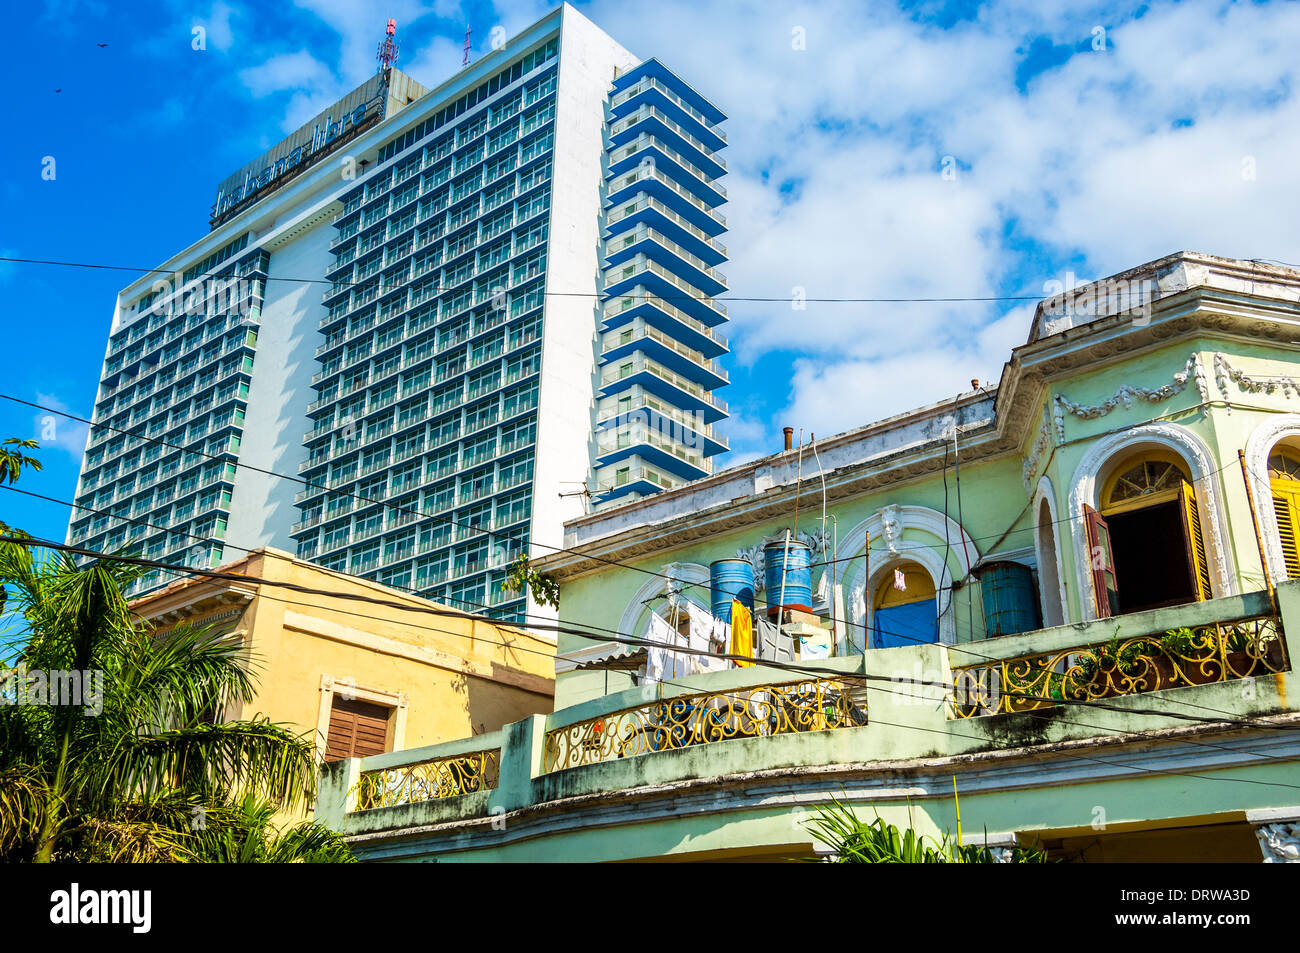 L'hôtel Habana Libre; ; peuple cubain et de l'architecture,La Havane, Cuba, Caraïbes Banque D'Images